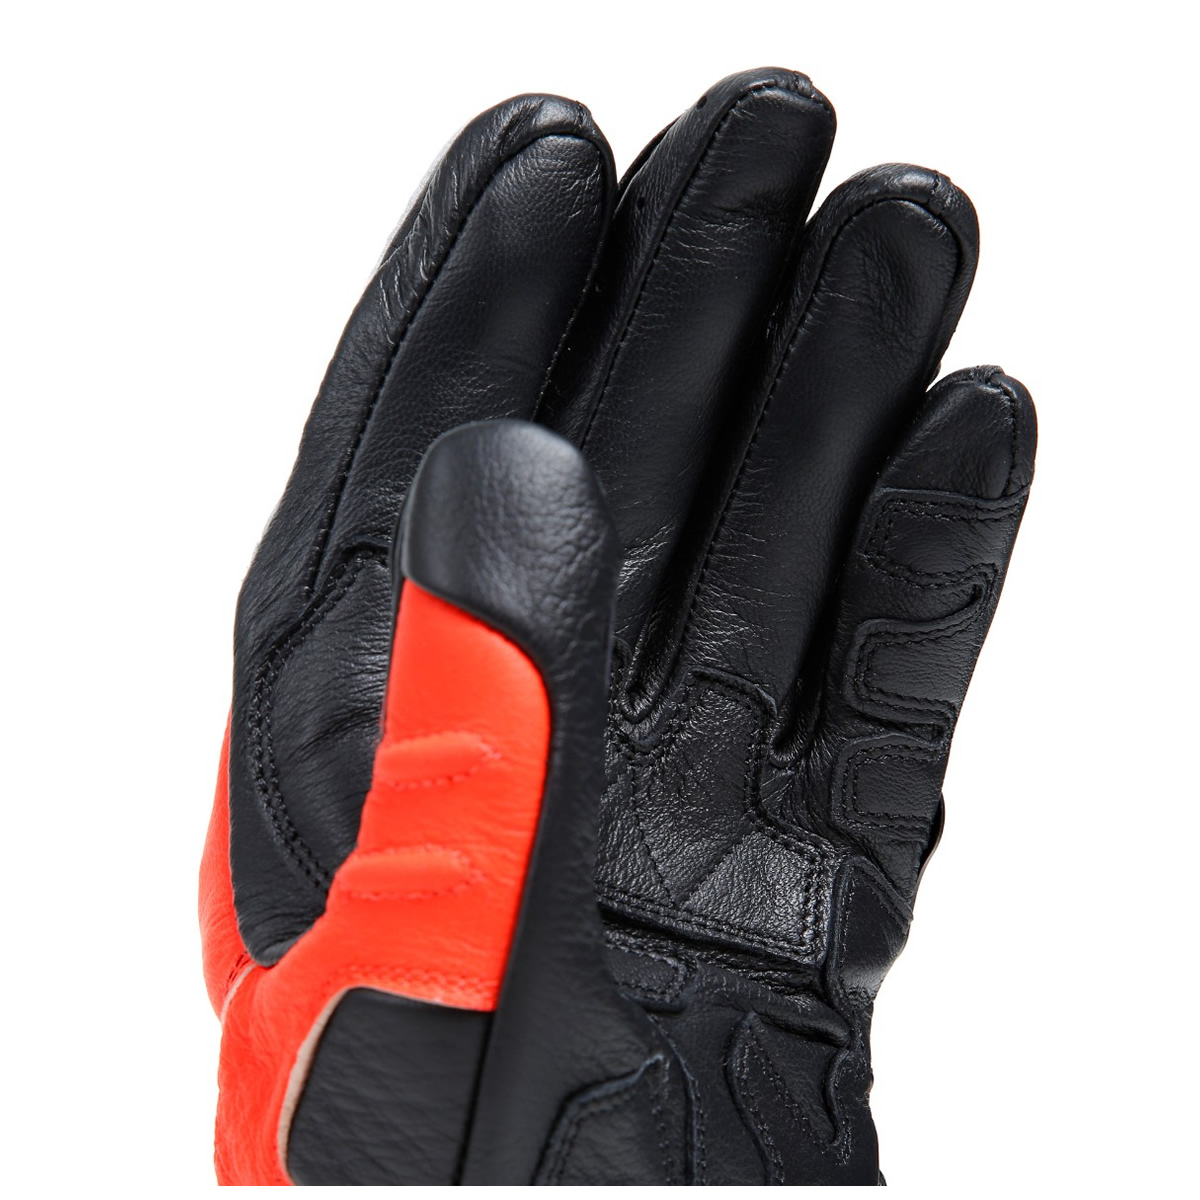 Dainese Handschuhe Carbon 4 Long, schwarz-fluorot-weiß